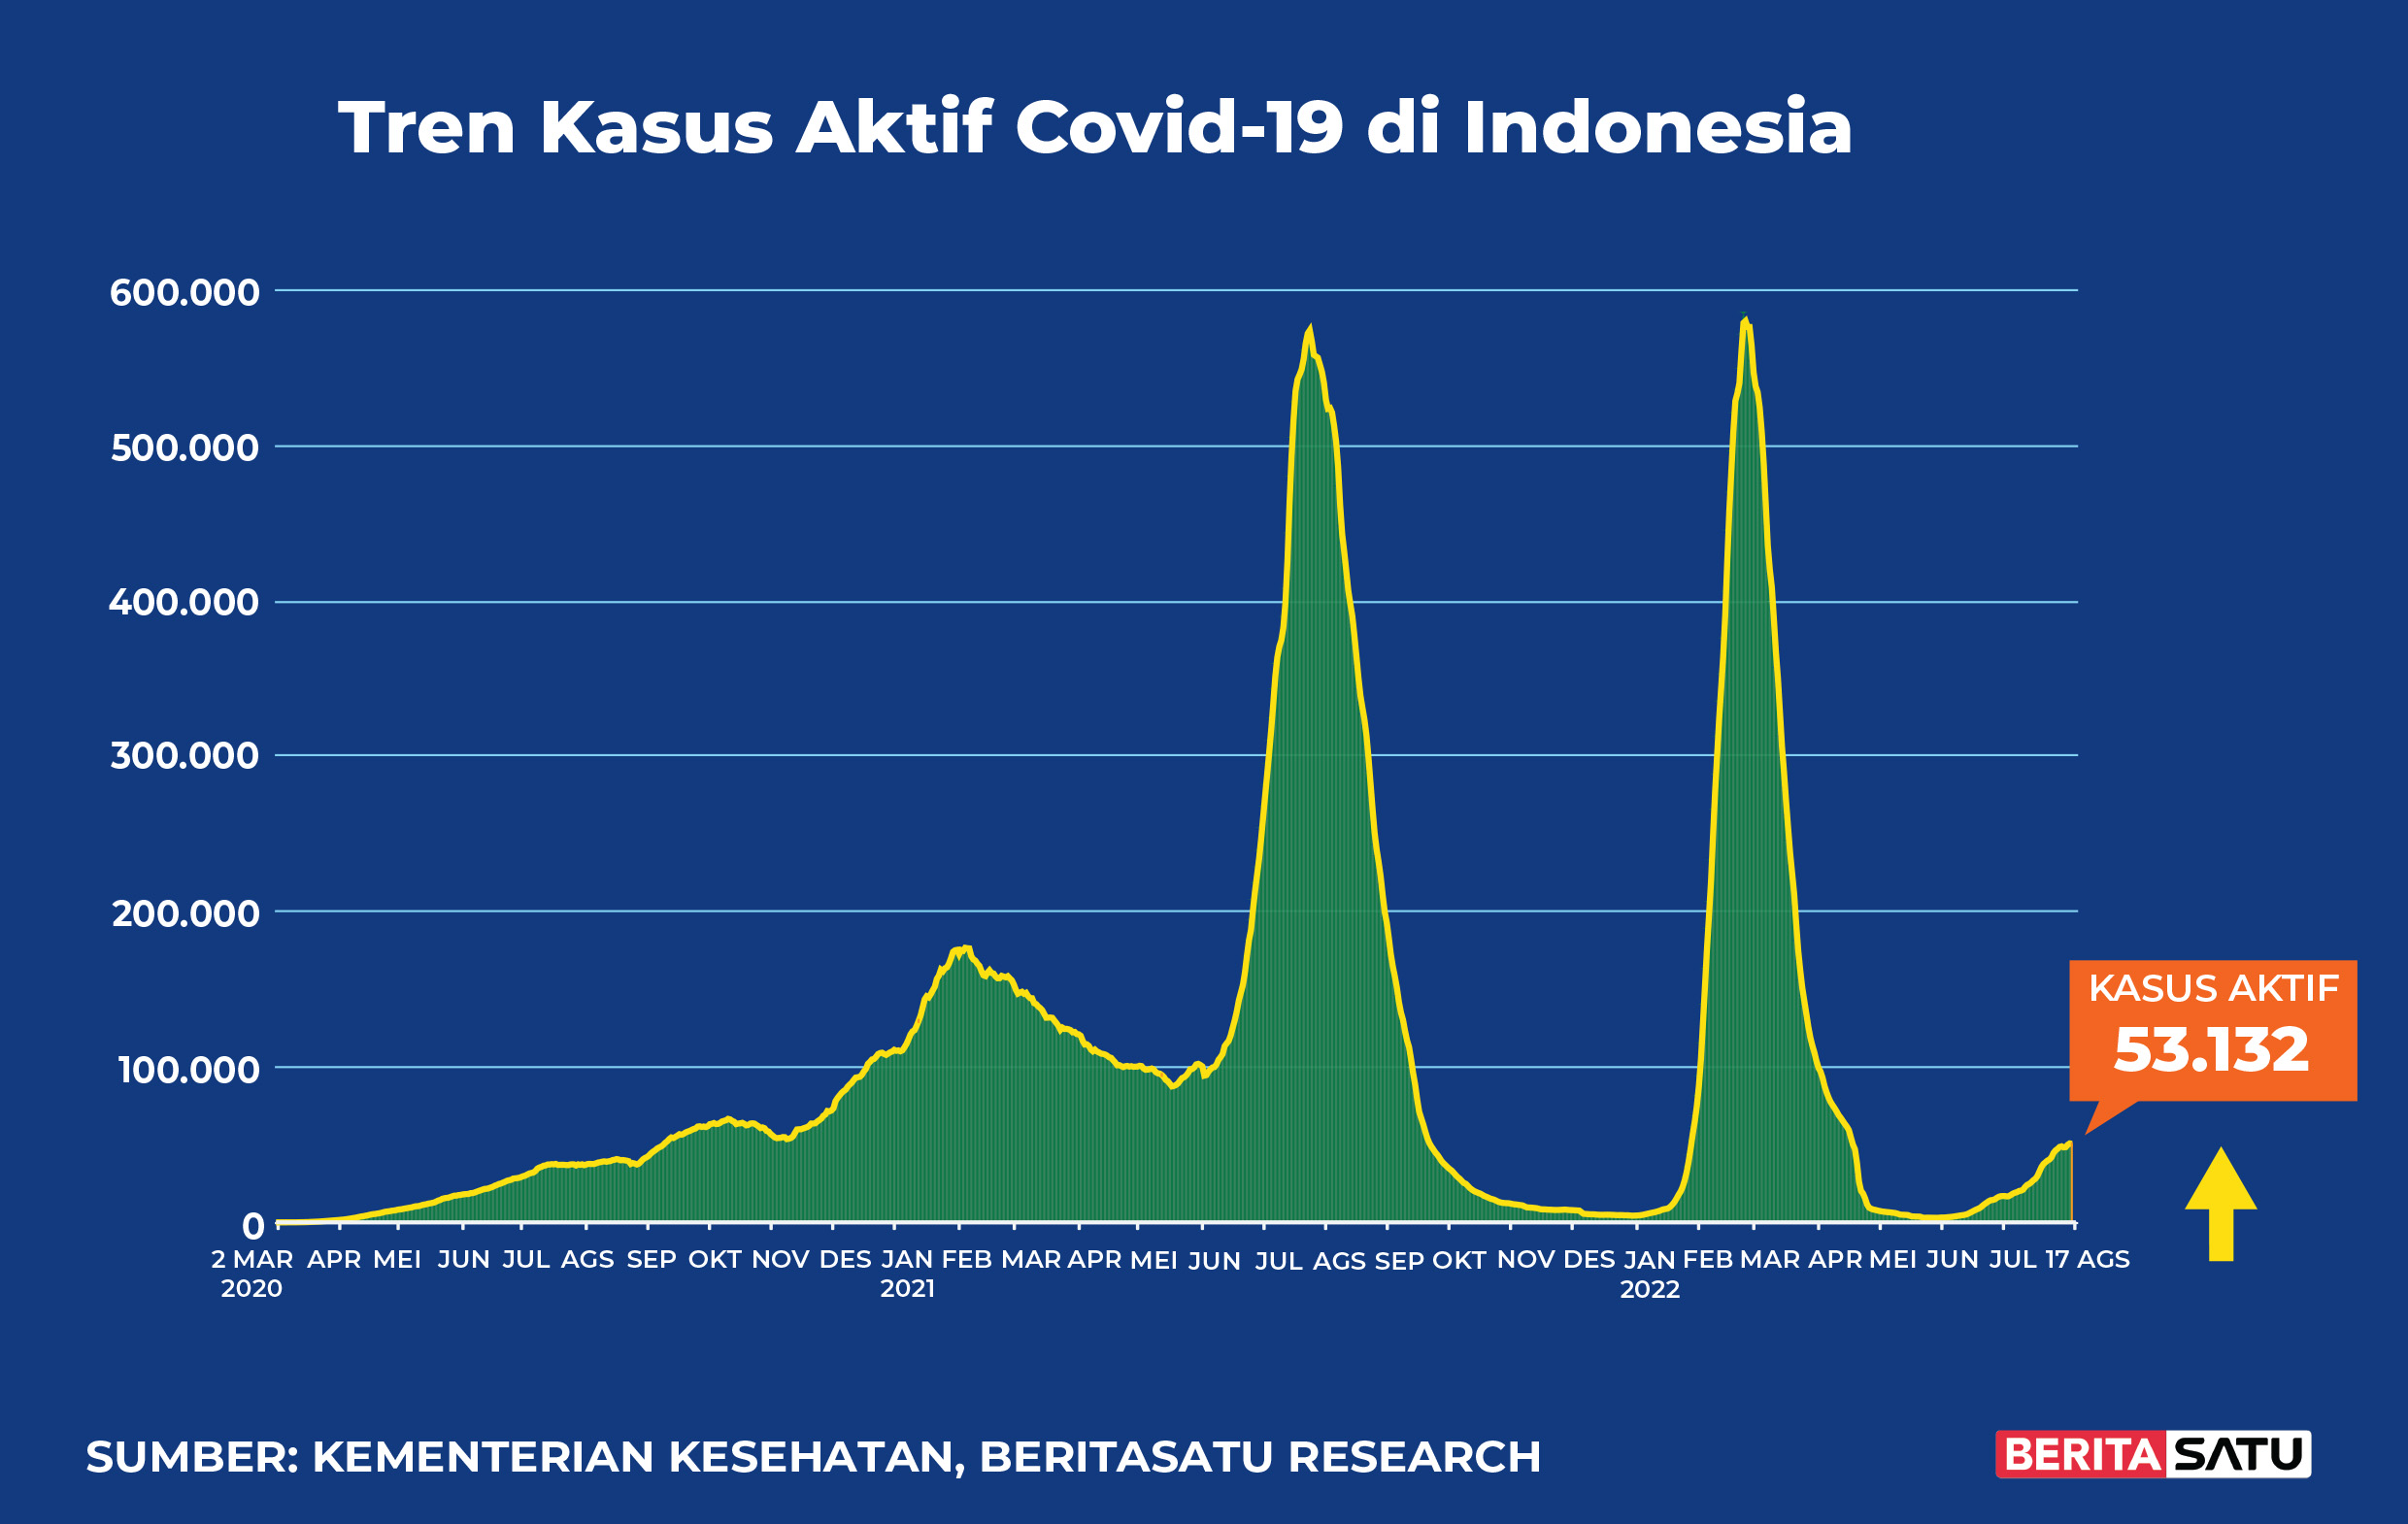 Kasus Aktif Covid-19 di Indonesia sampai 17 Agustus 2022